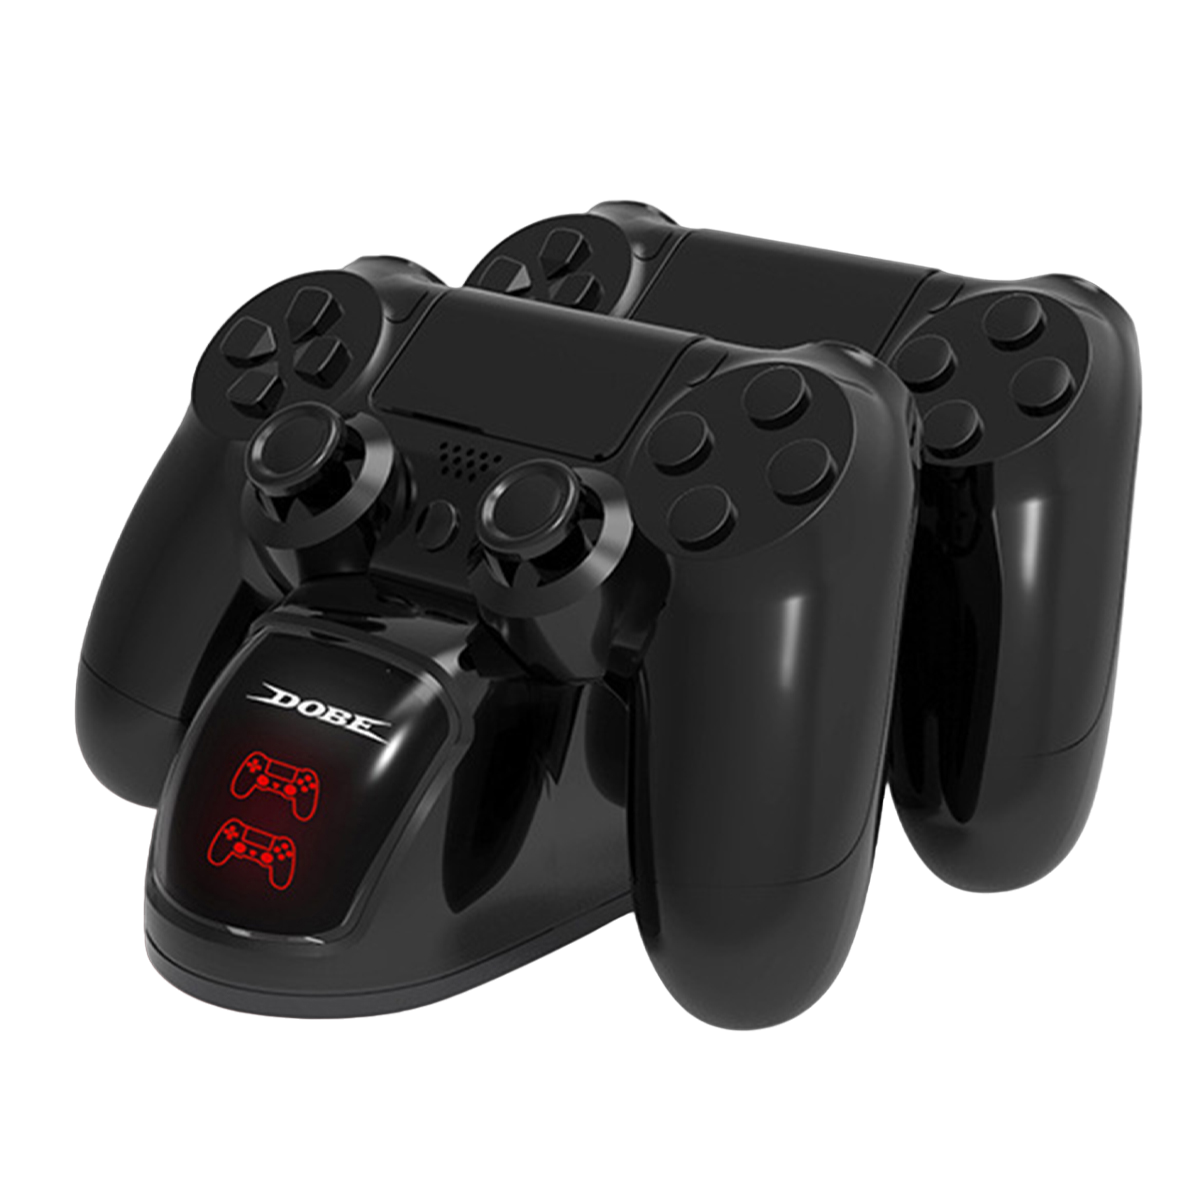 für 4-Controller, PS4/Pro/Slim Station RESPIEL schwarz Ladestation,Ladegerät Controller PlayStation Gamepad, PS4